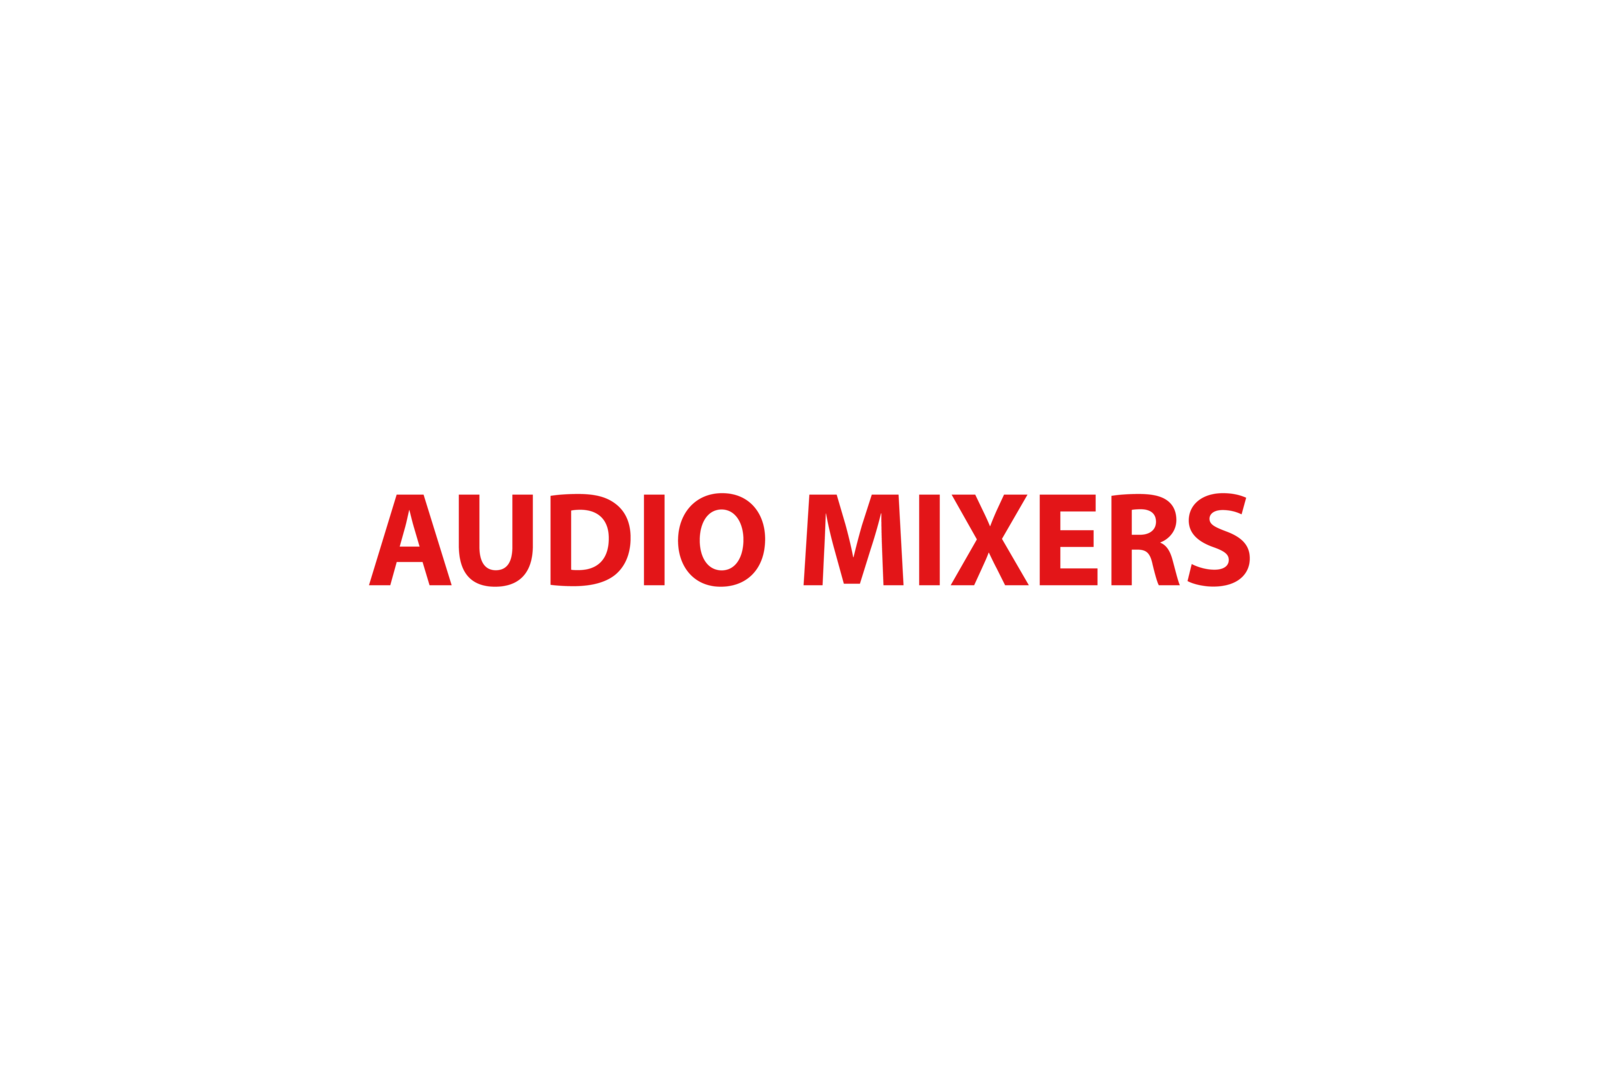 Audio mixers